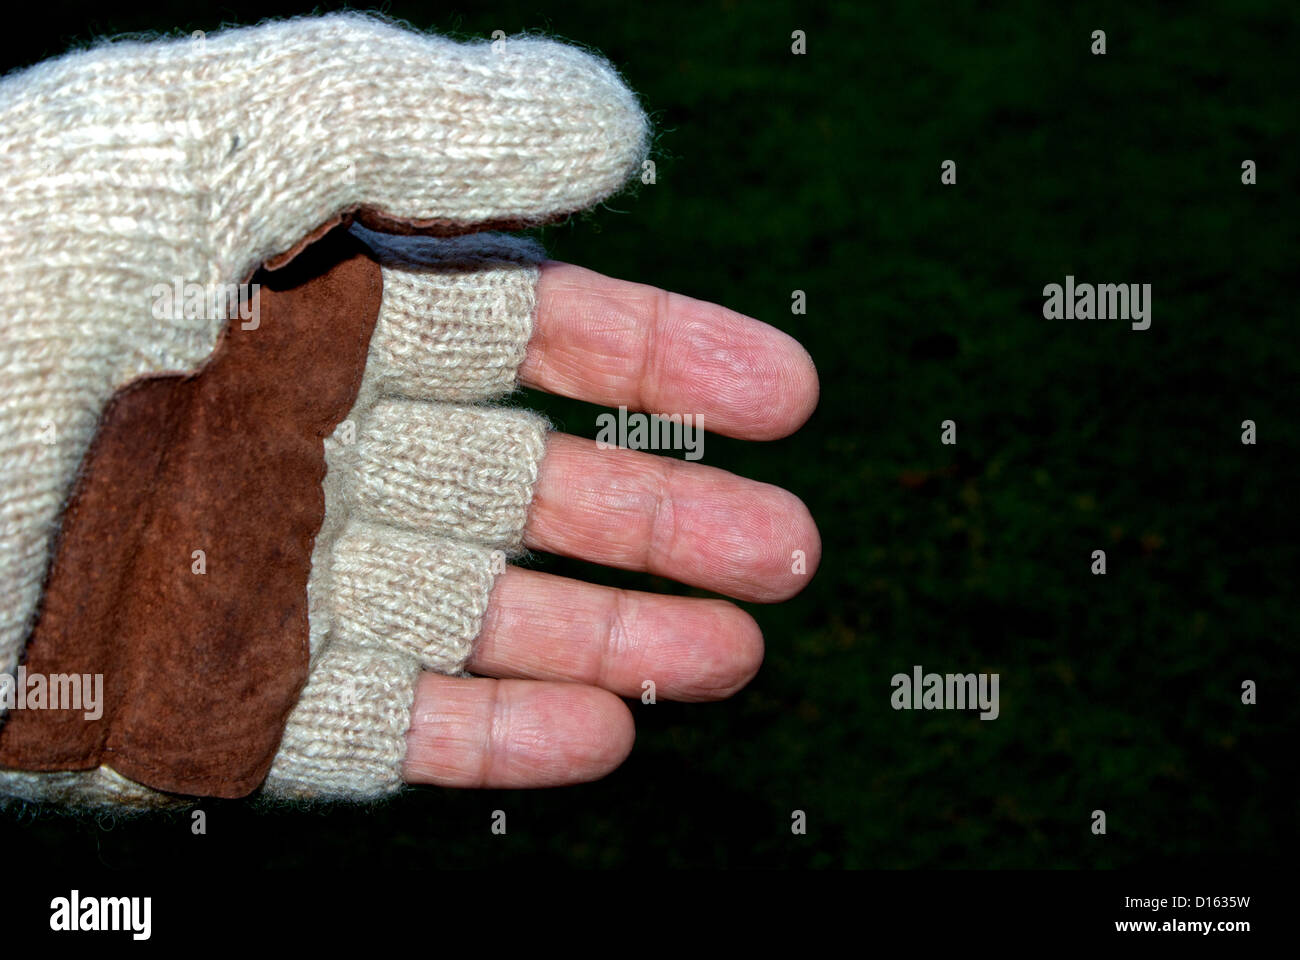 Guanto senza dita immagini e fotografie stock ad alta risoluzione - Alamy